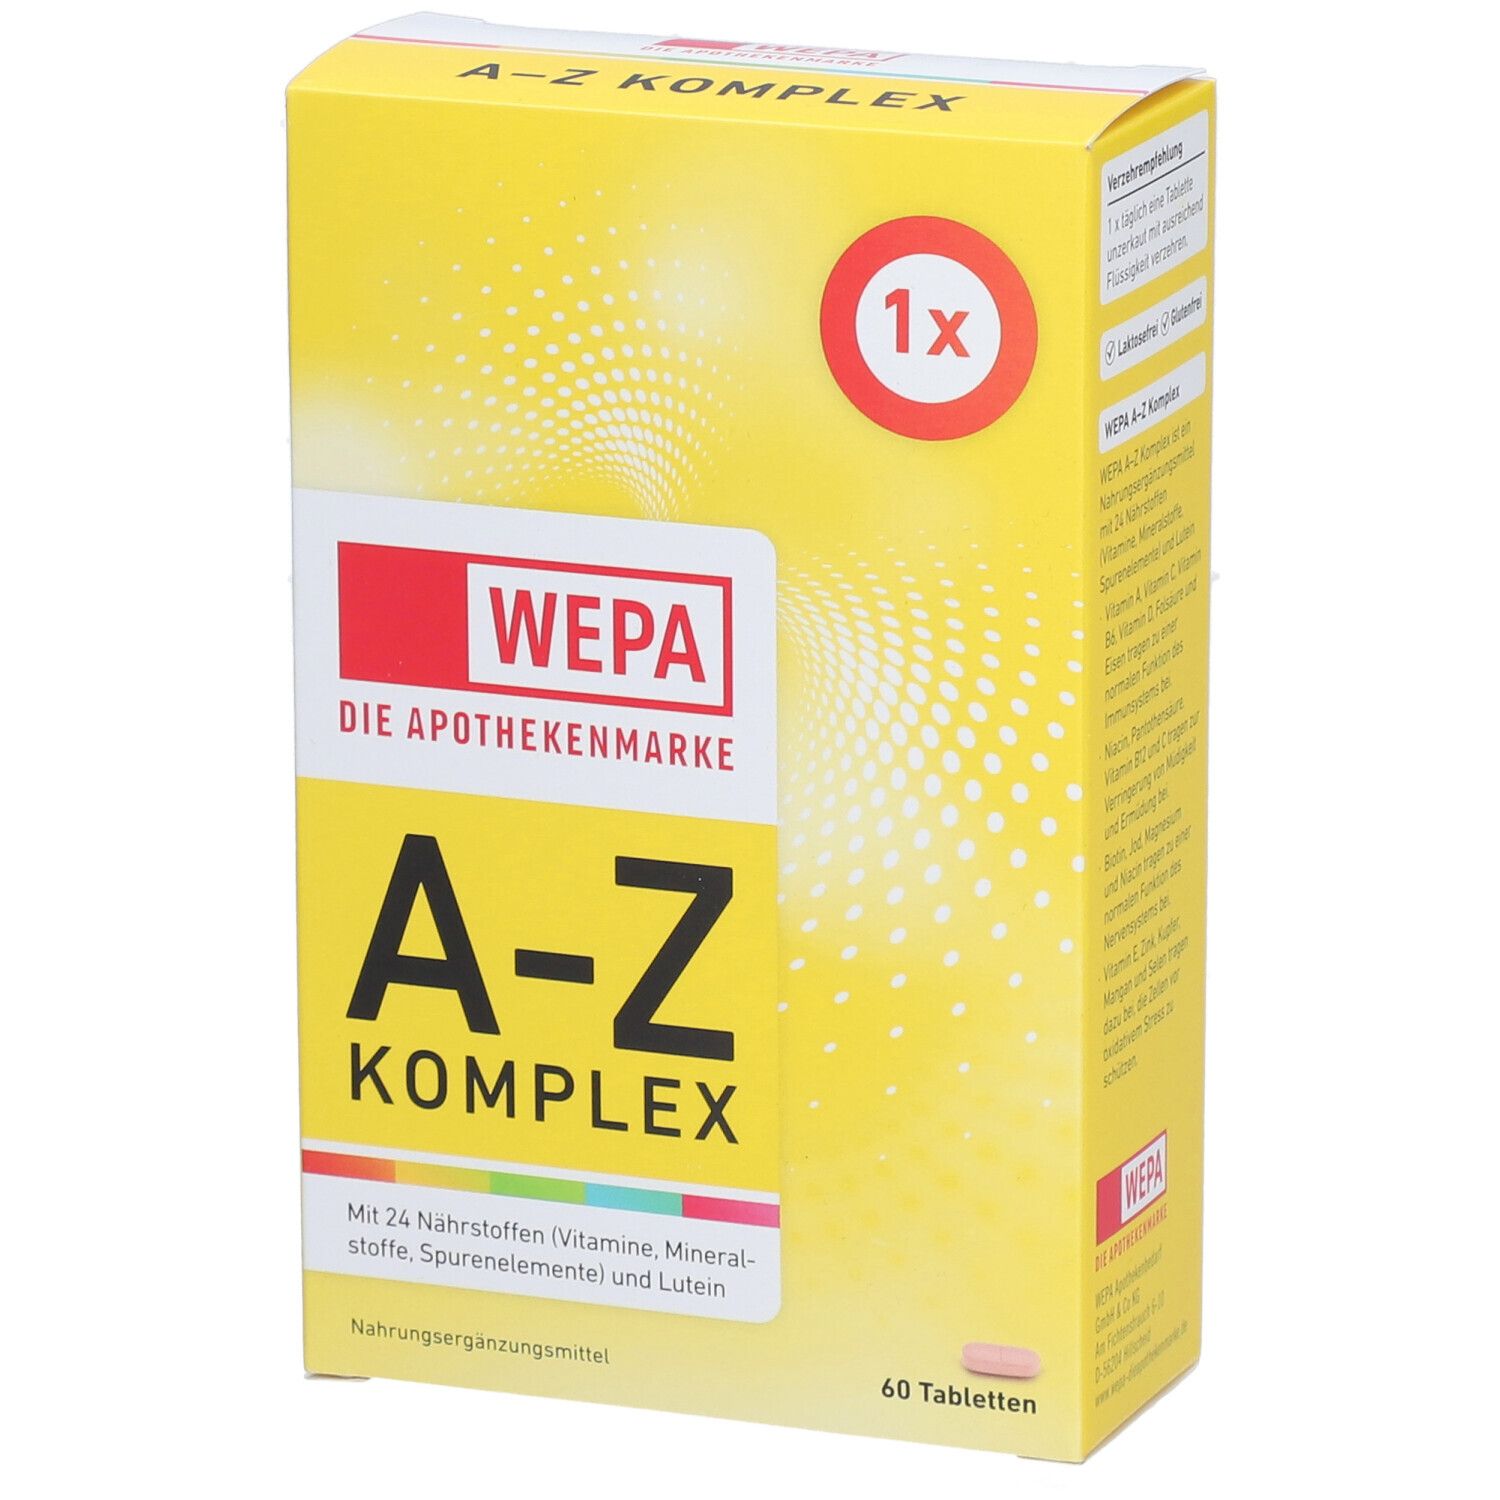 WEPA A-Z Komplex